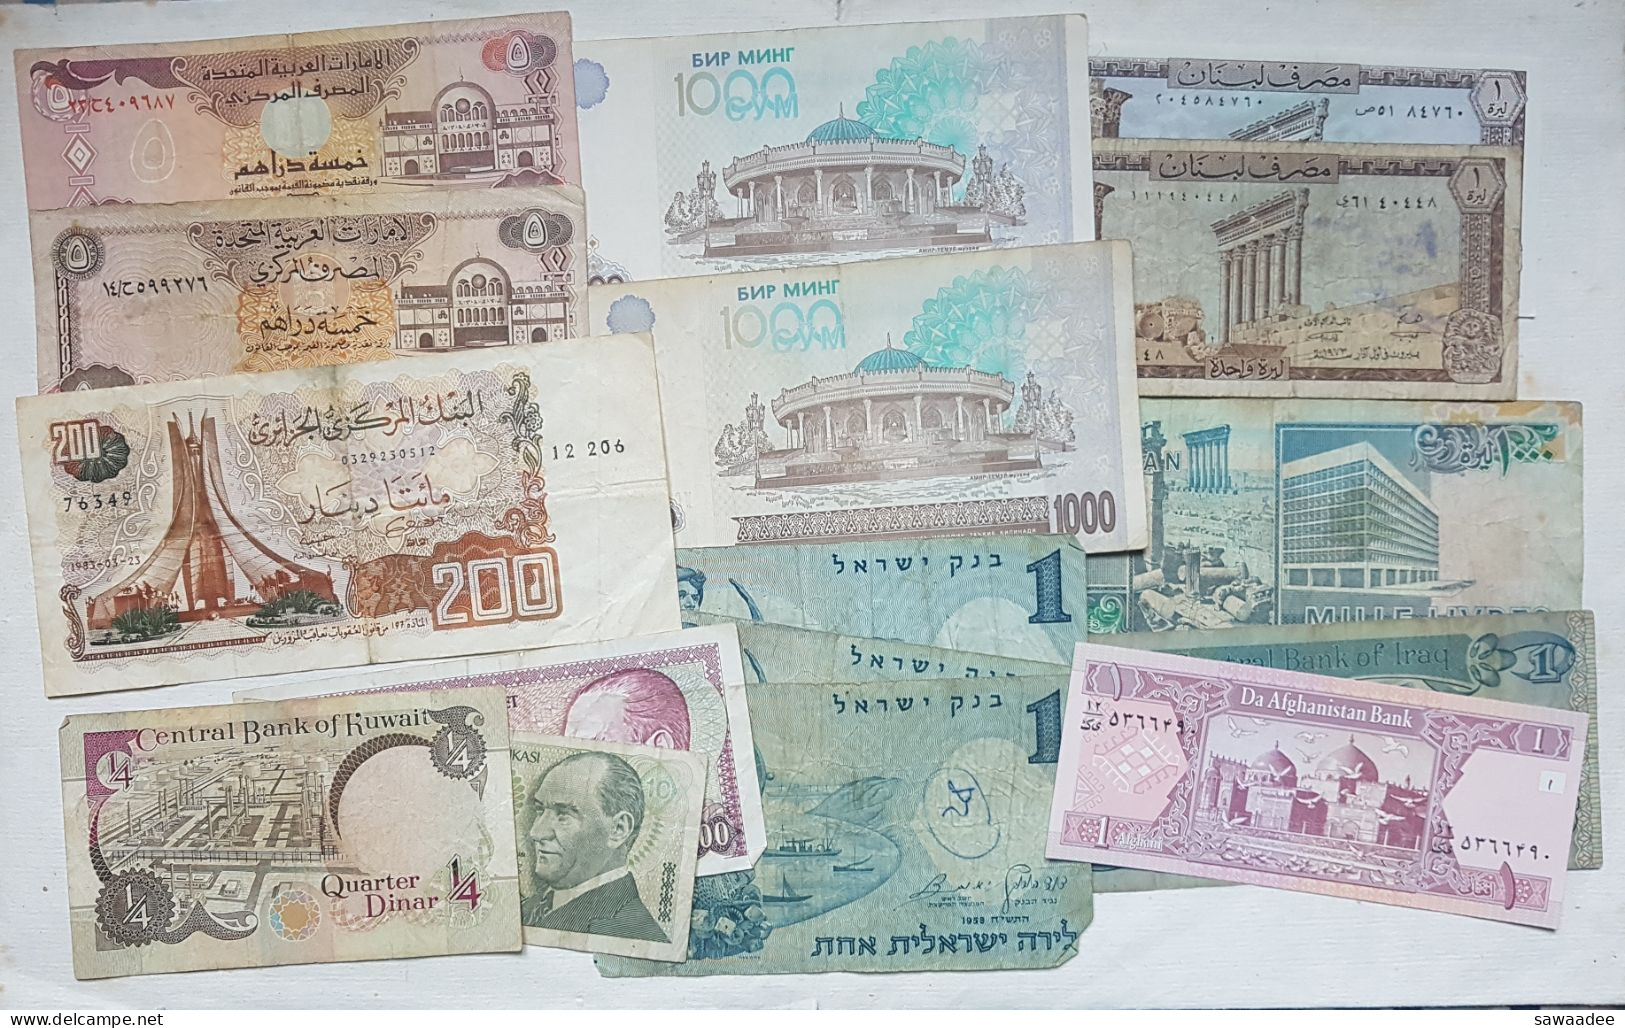 BILLETS MOYEN ORIENT / ASIE CENTRALE - VRAC LOT DE 16 BILLETS - ISRAEL - KOWAIT - IRAK - LIBAN - OUZBEKISTAN - A VOIR - Kilowaar - Bankbiljetten